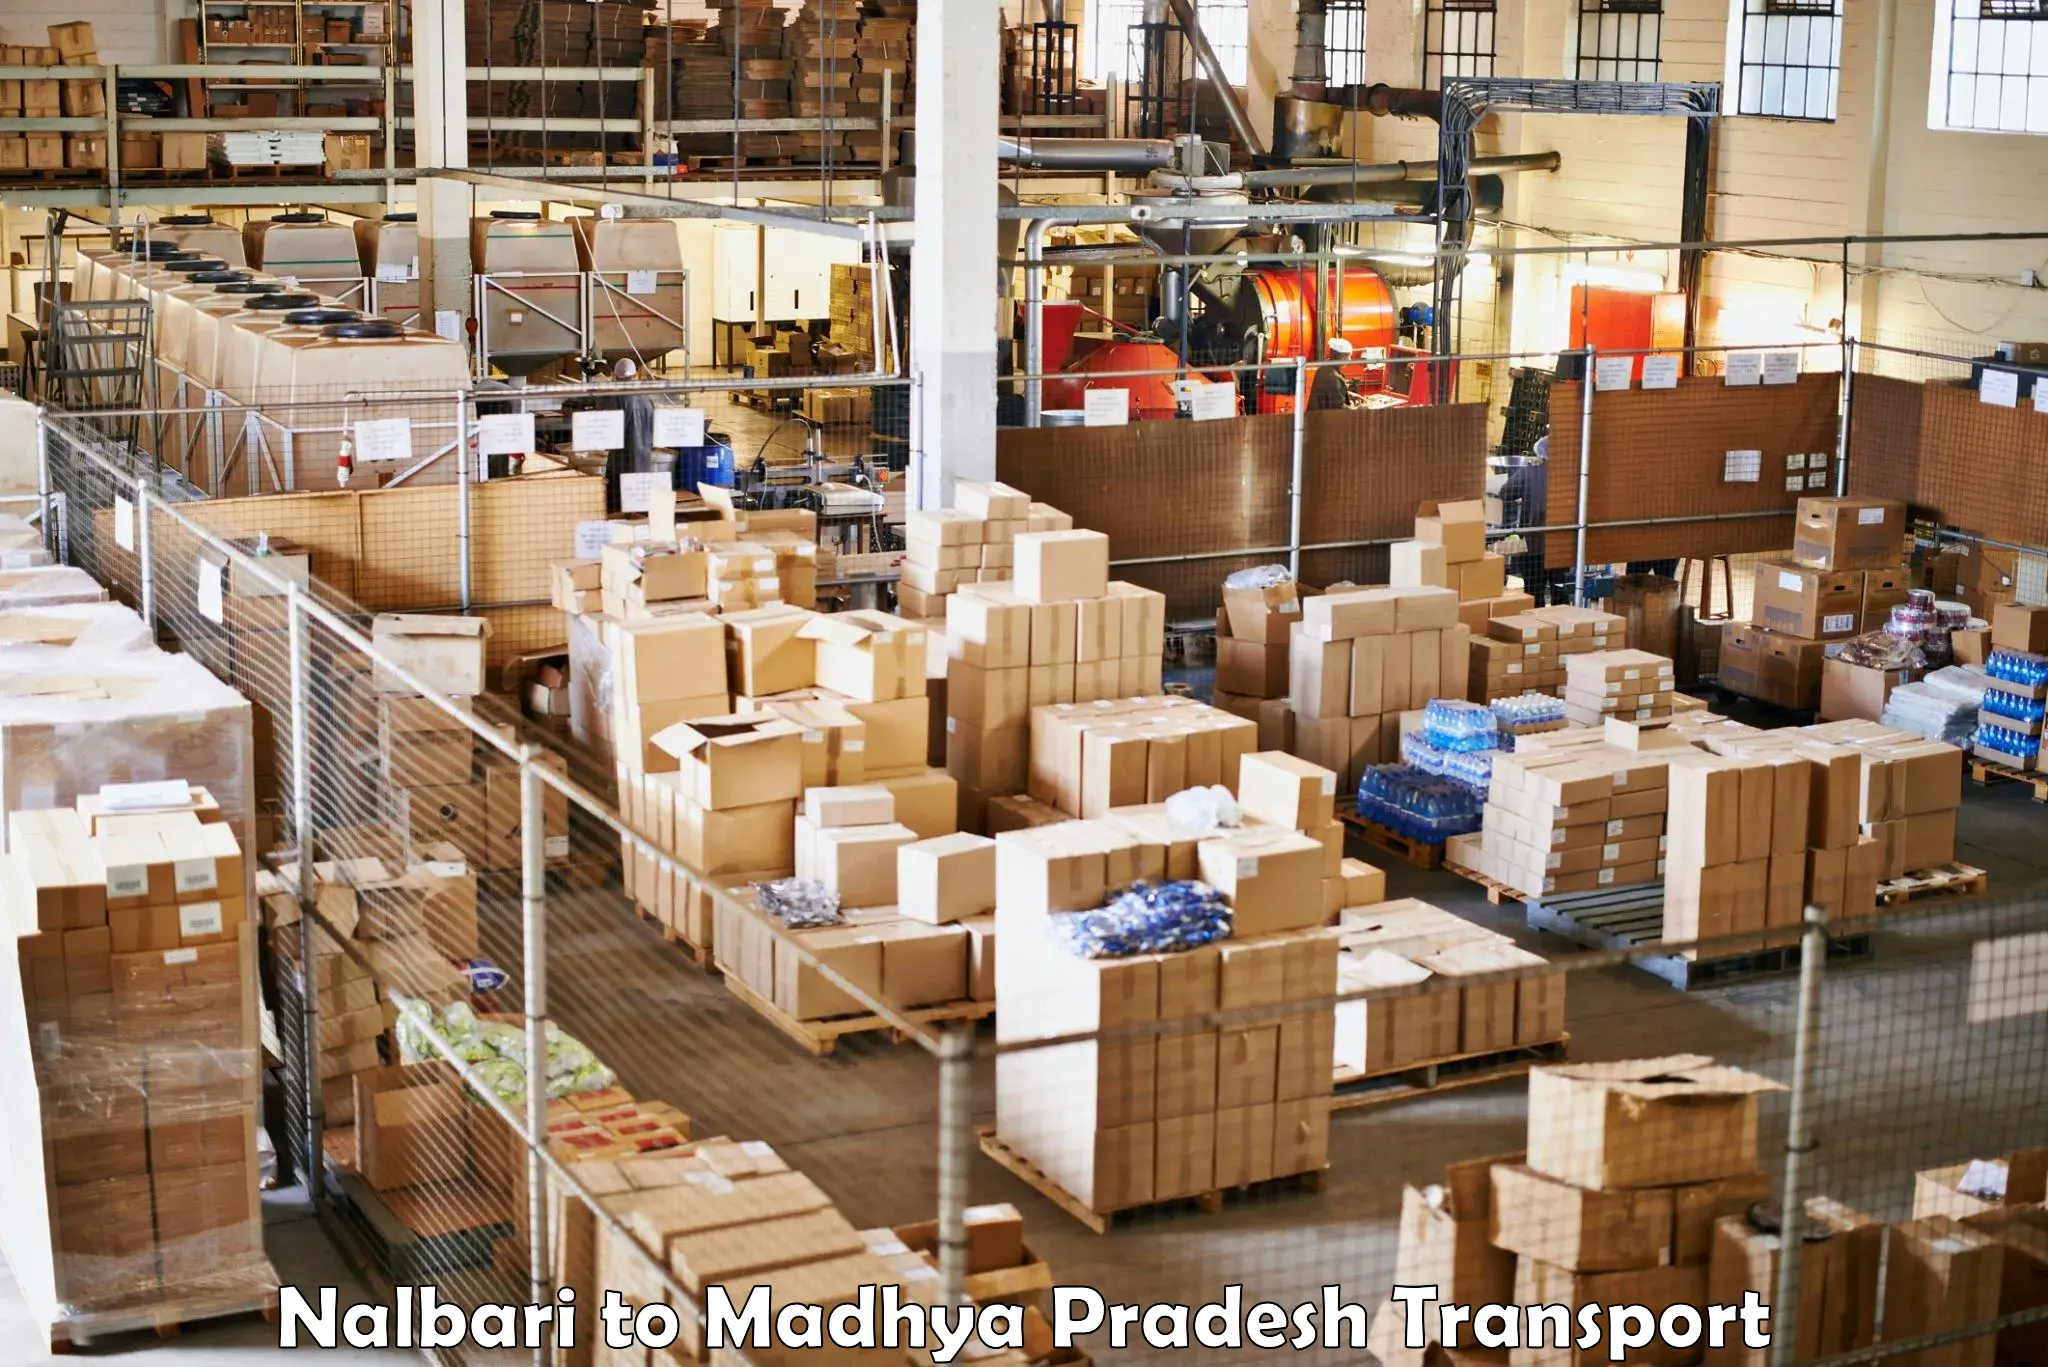 Truck transport companies in India Nalbari to Maihar